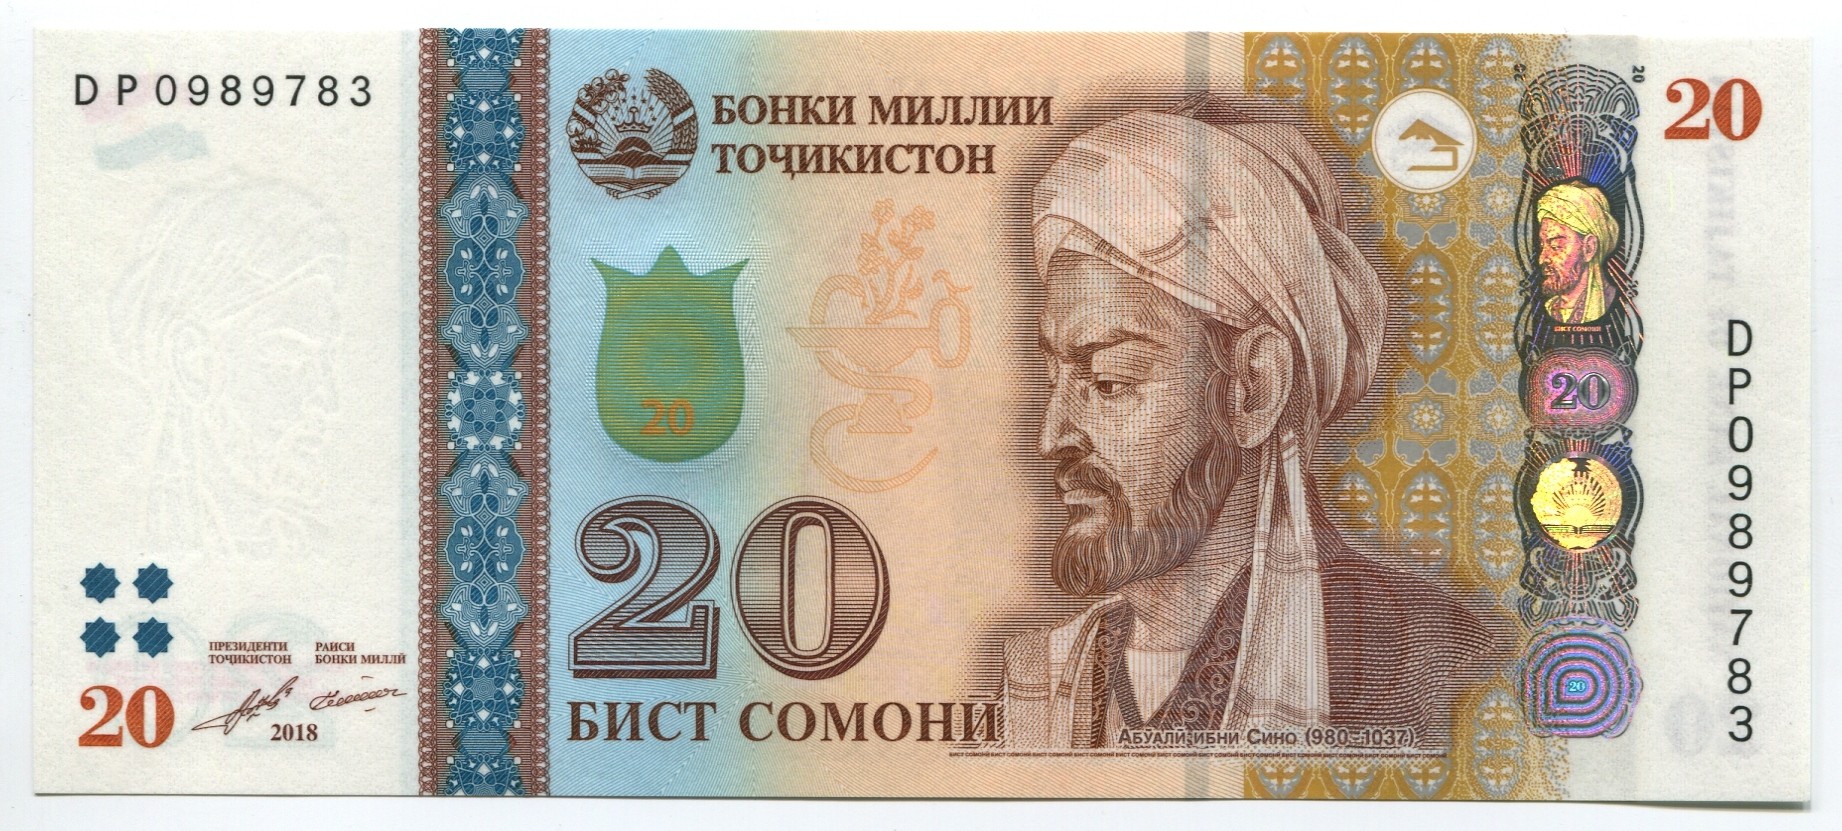 Tajikistan 20 Somoni p-25 2018 UNC Banknote 